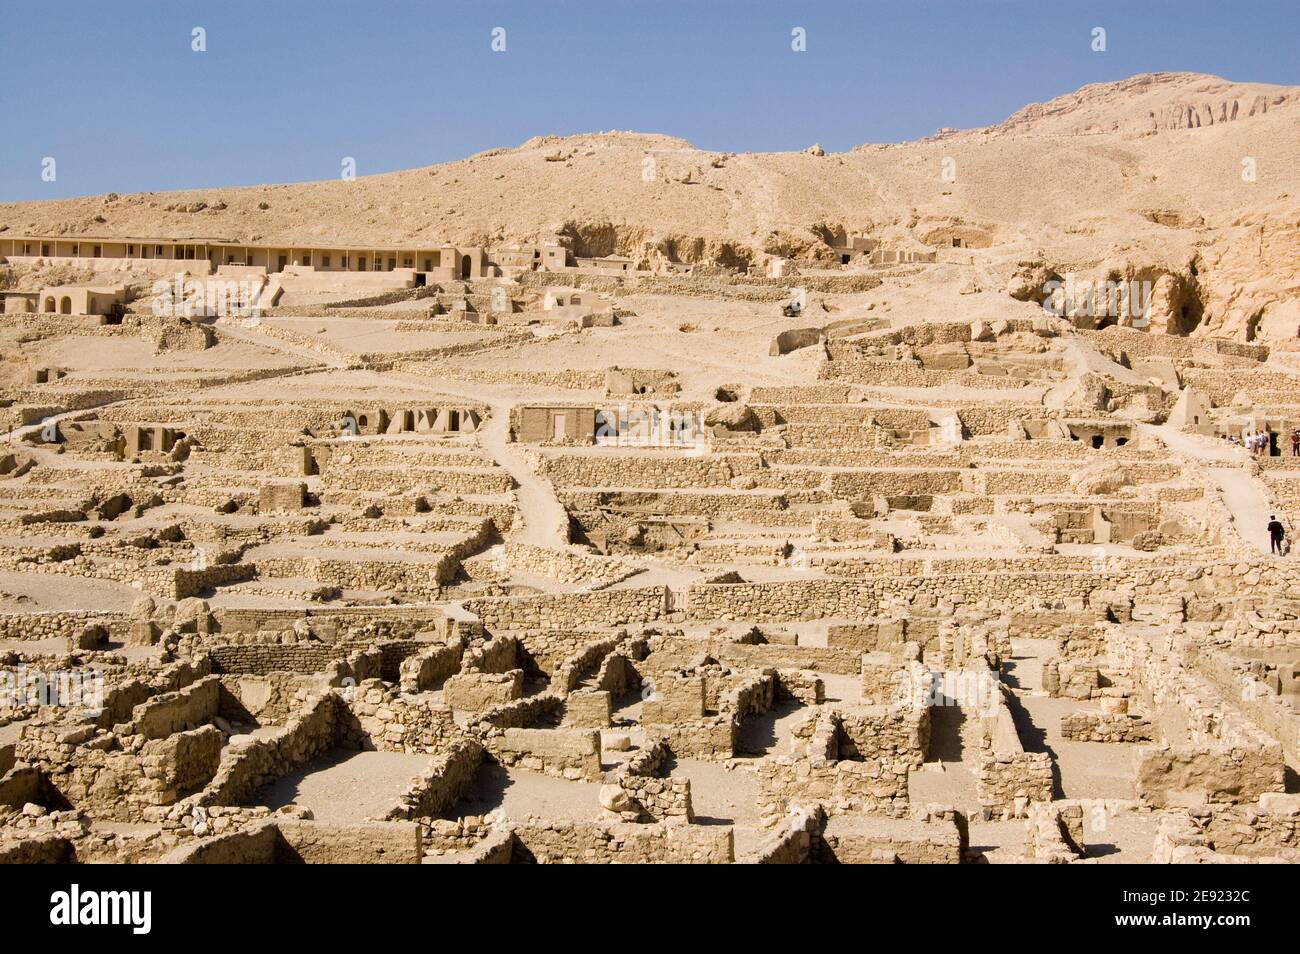 Maisons en ruines et tombeaux de l'ancienne ville égyptienne de Deir el Medina, Louxor, Égypte. Ruines de plus de 1000 ans. Banque D'Images